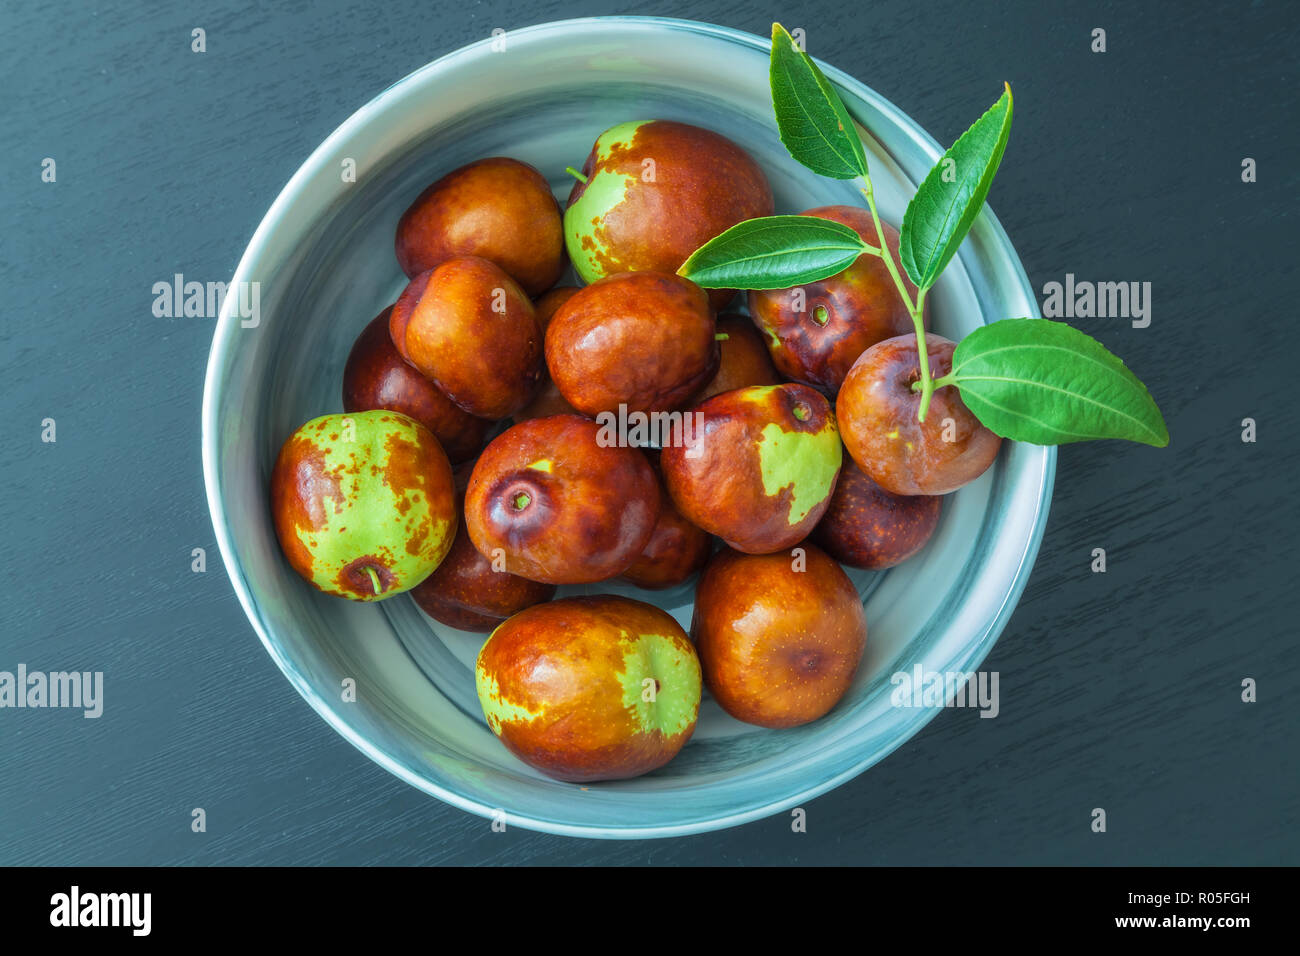 Bowl of fresh jujube fruit (Ziziphus jujuba) Stock Photo